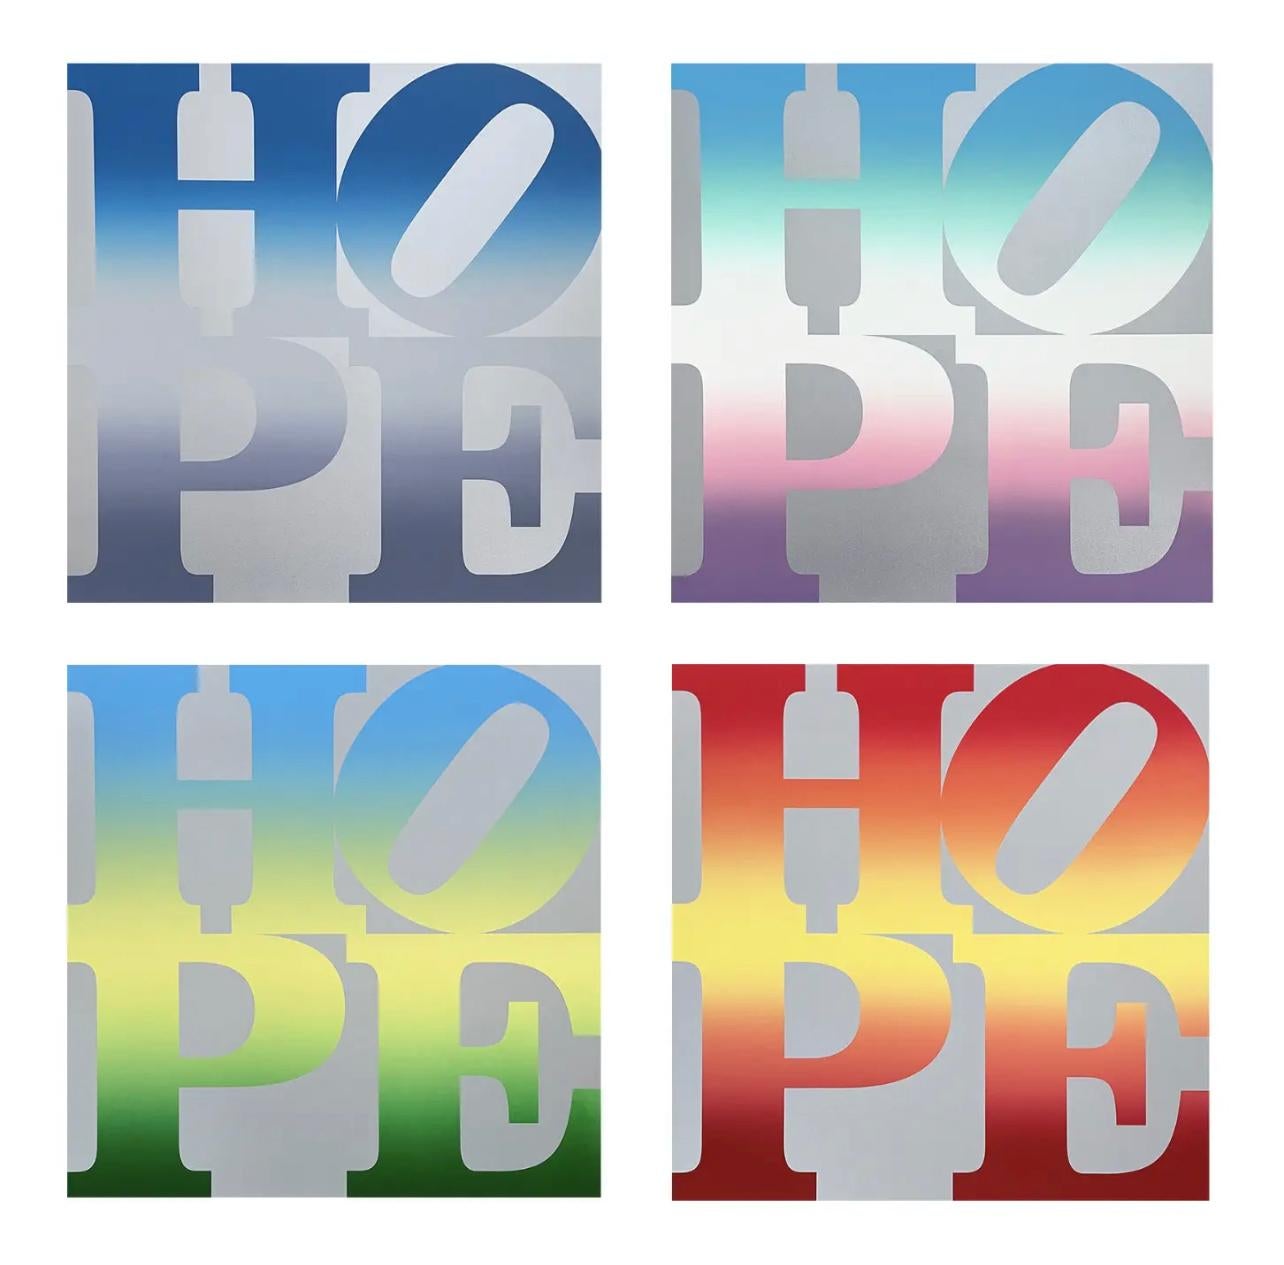 Vier Jahreszeiten von HOPE ( vier Kunstwerke), Robert Indiana